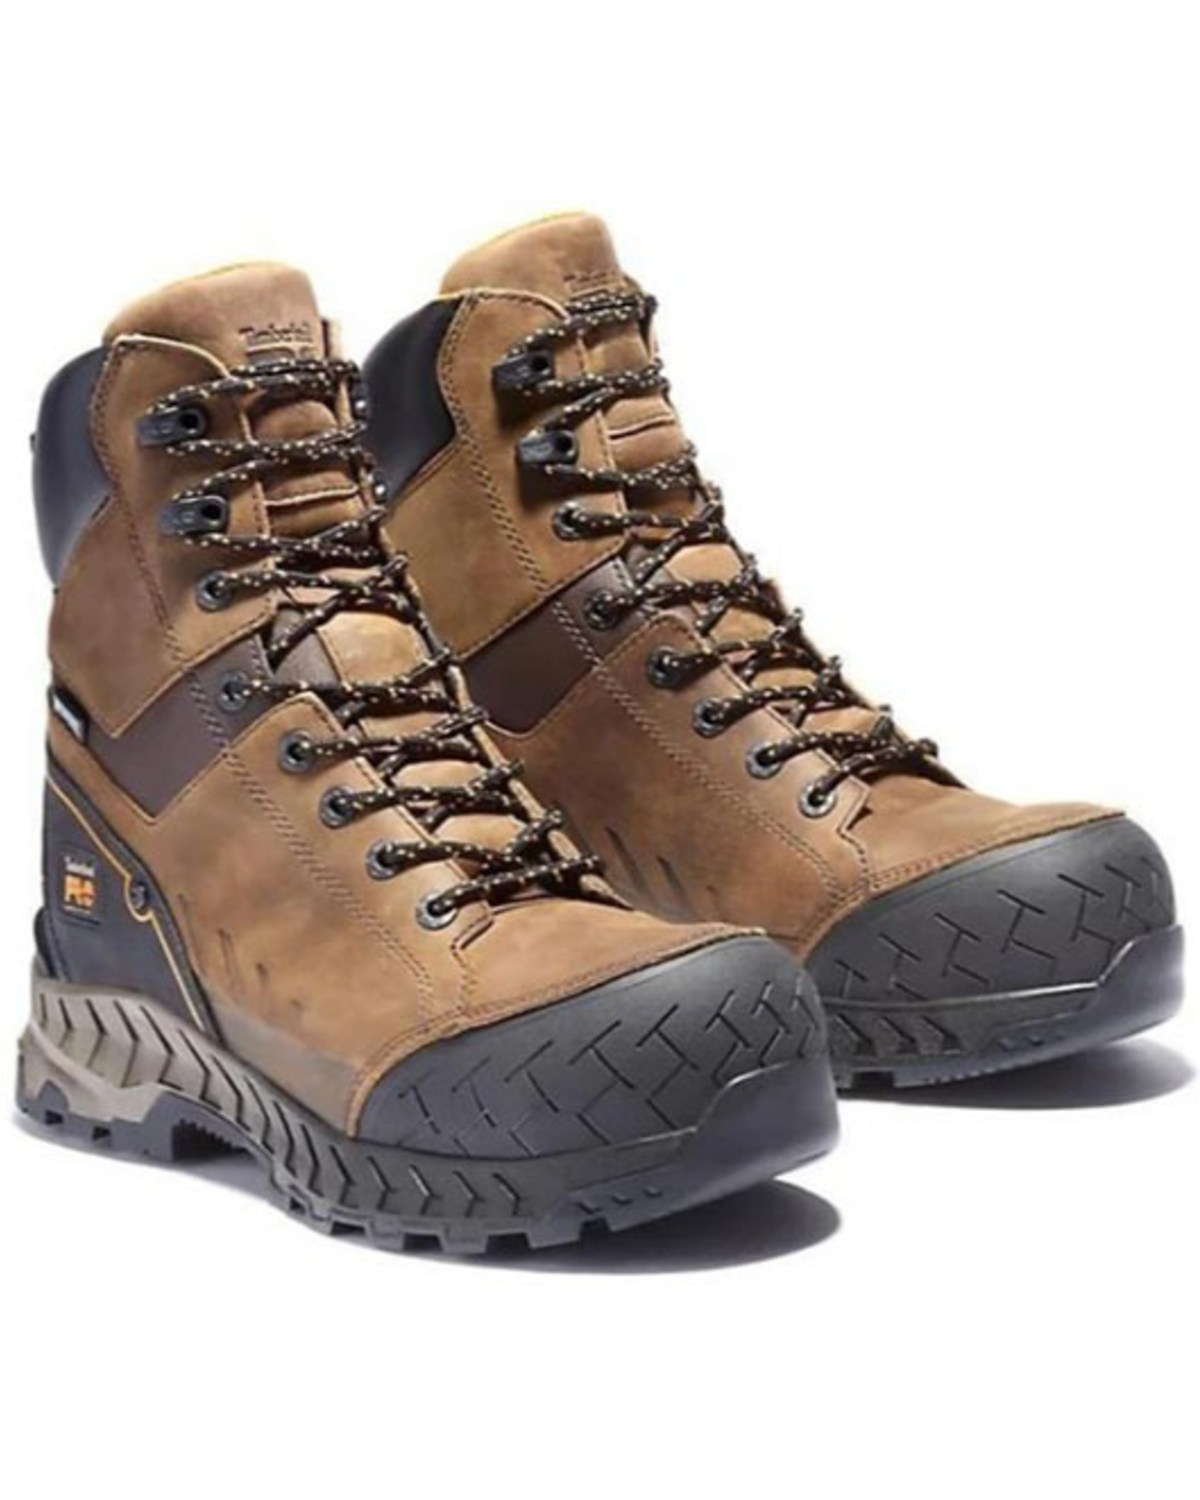 Timberland Pro Men's Summit Waterproof Work Boots - Composite Toe